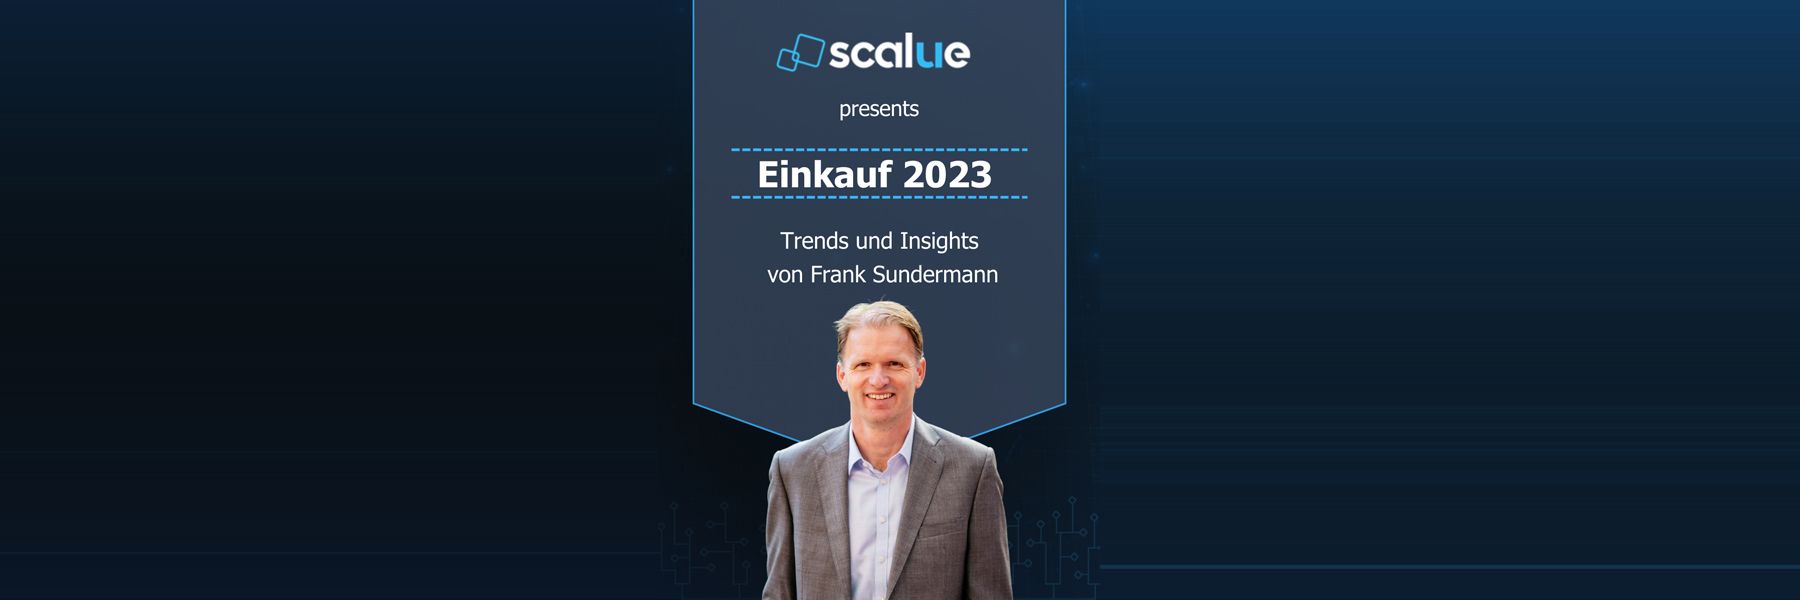 Einkauf 2023 - Trends und Insights von Frank Sundermann